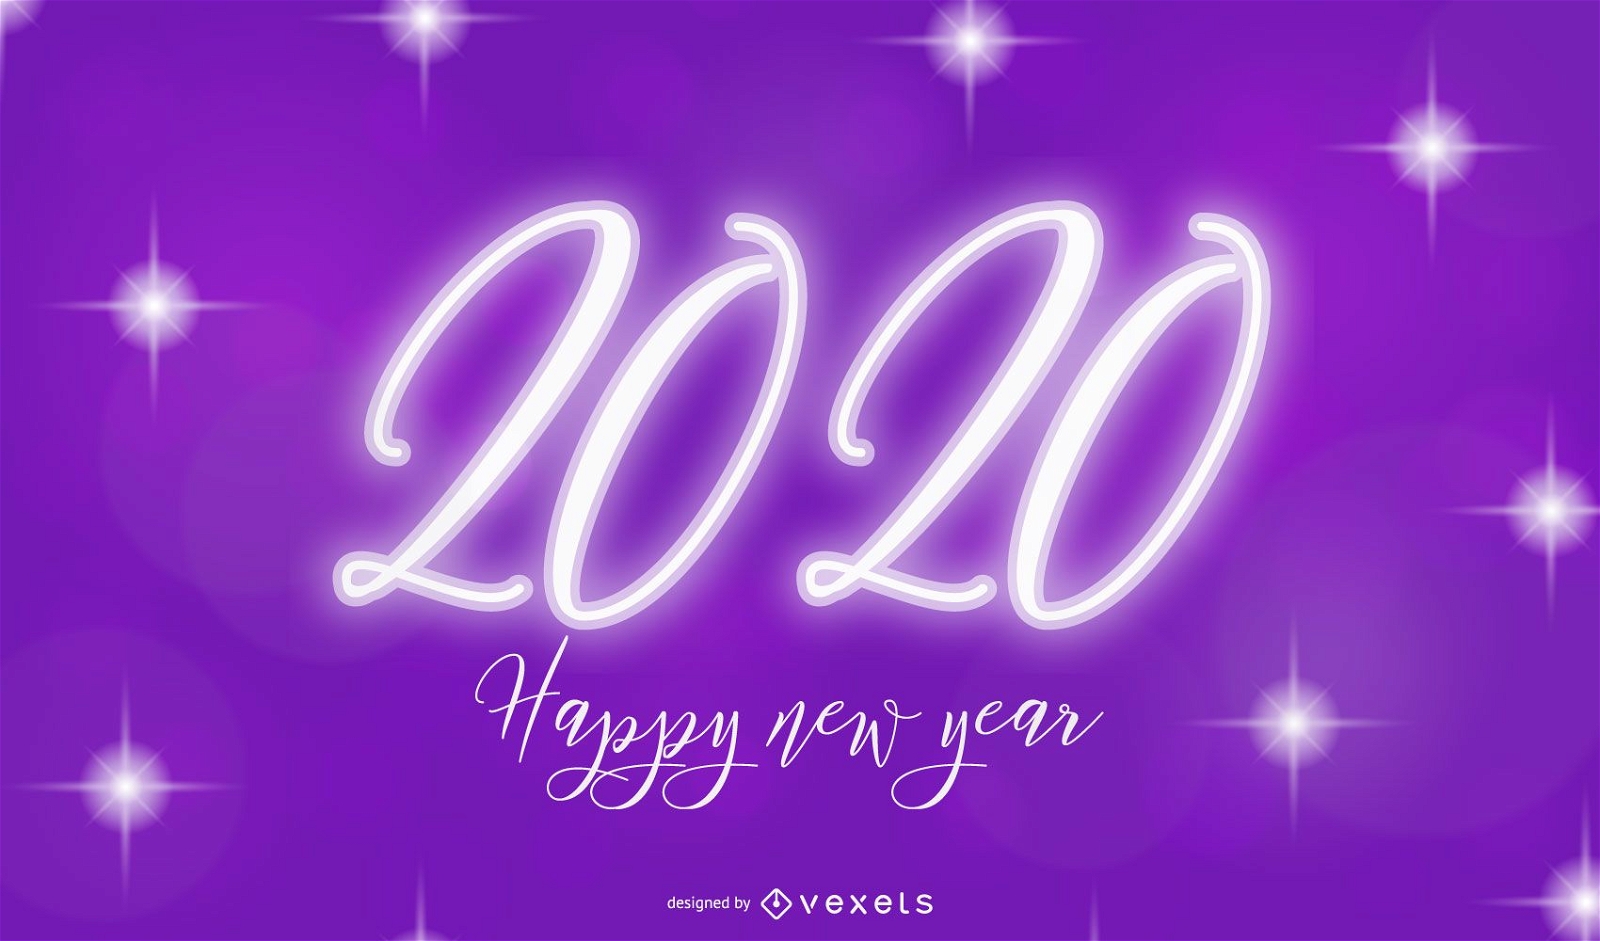 Kreative Purple Light 2015 Typografie